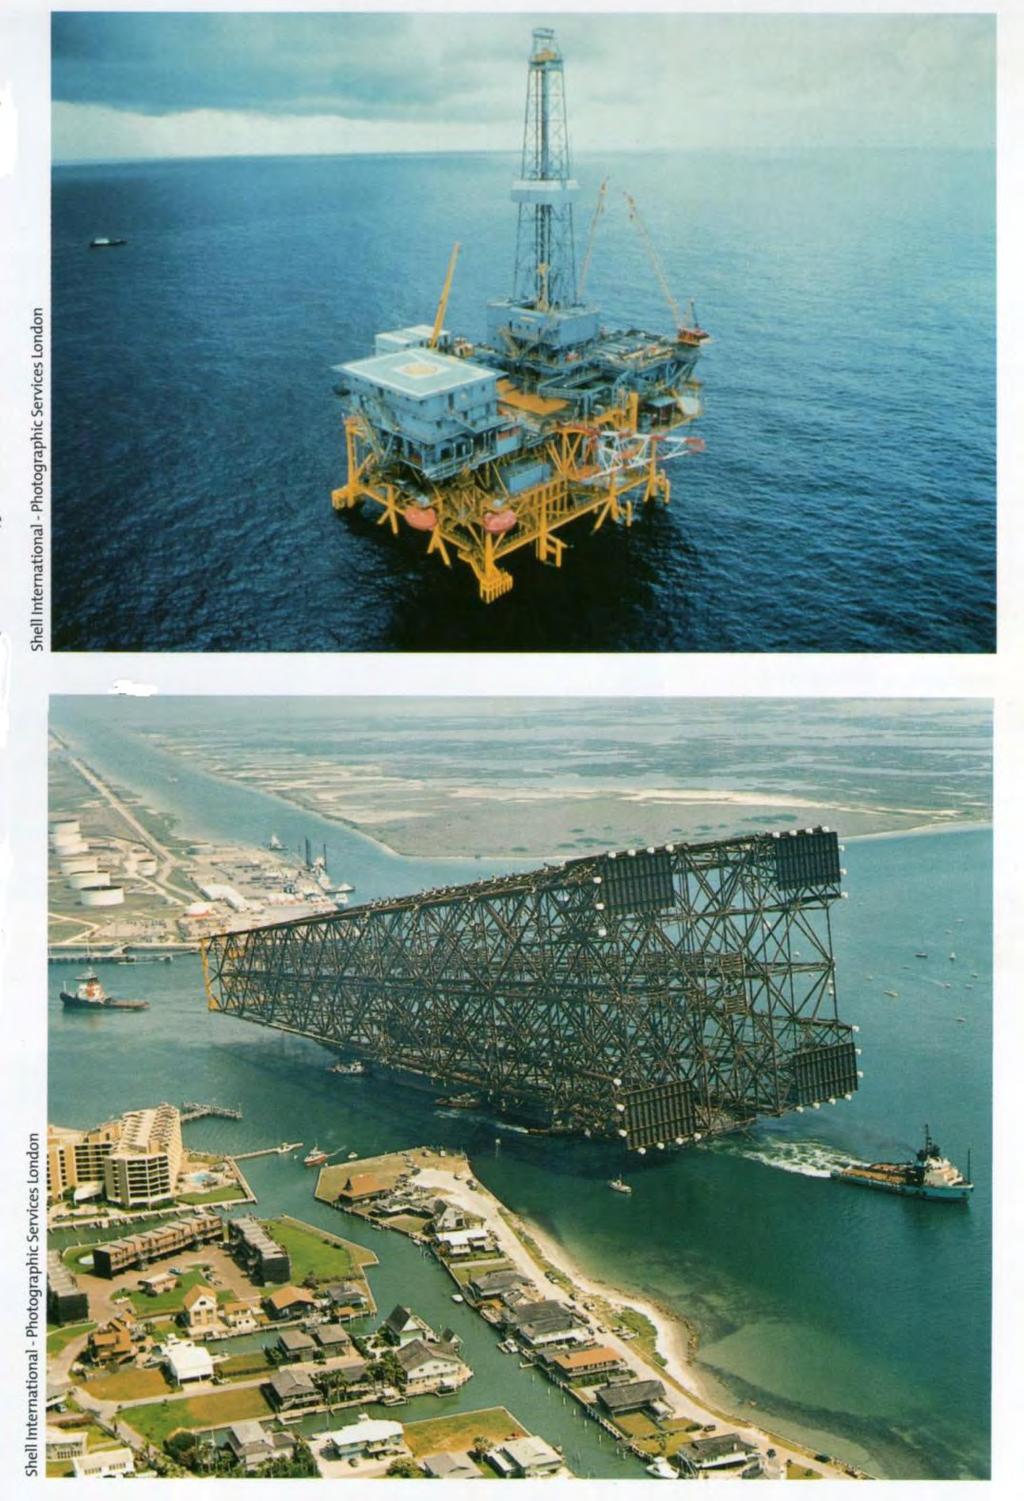 Figure 2 Bullwinkle platform decks in the Gulf